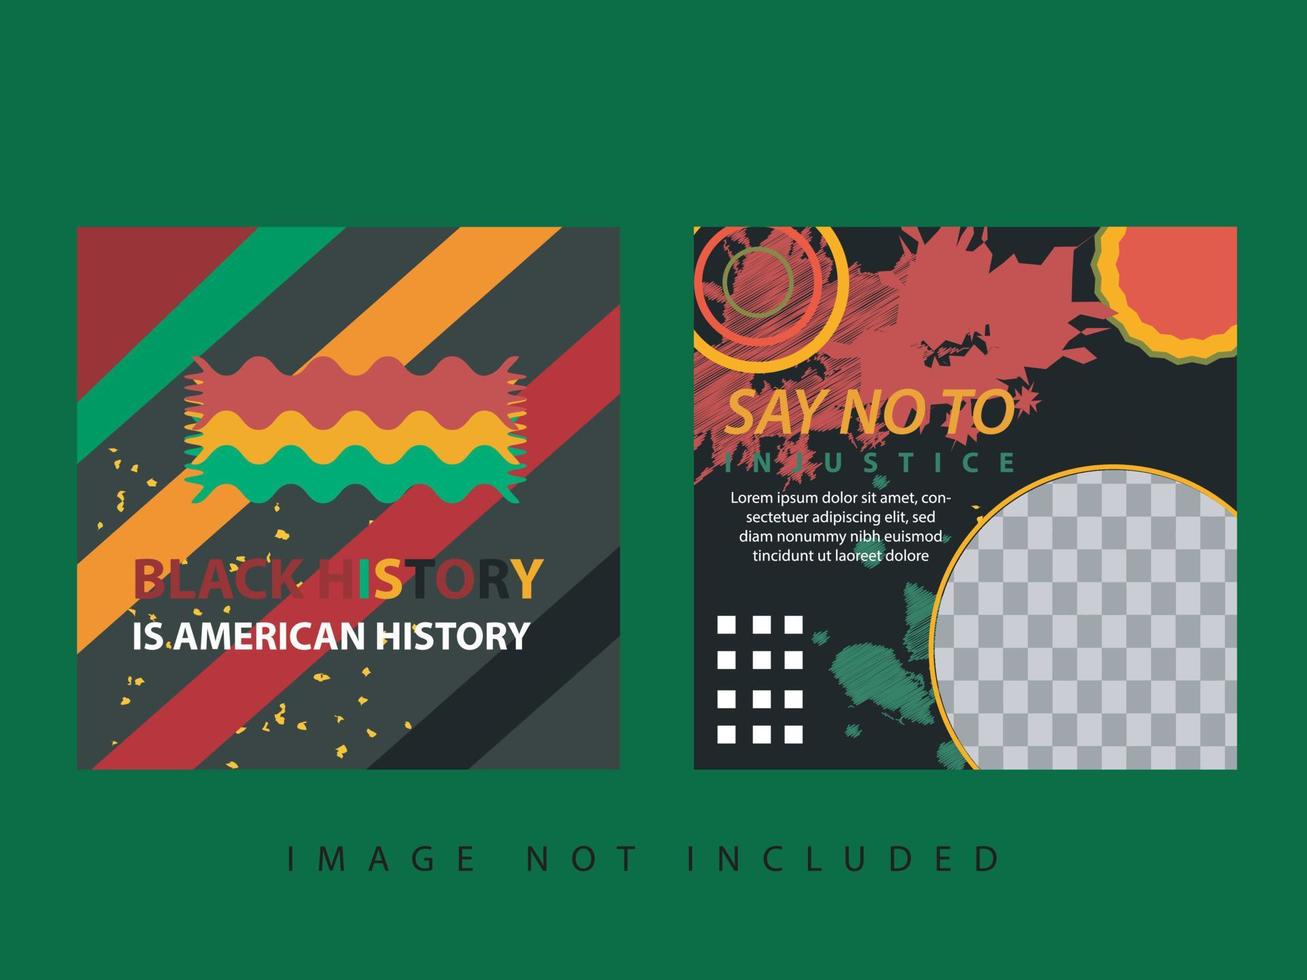 vektor baner eller flygblad mall med abstrakt färgrik design till fira och fira svart historia månad i Amerika och afrika